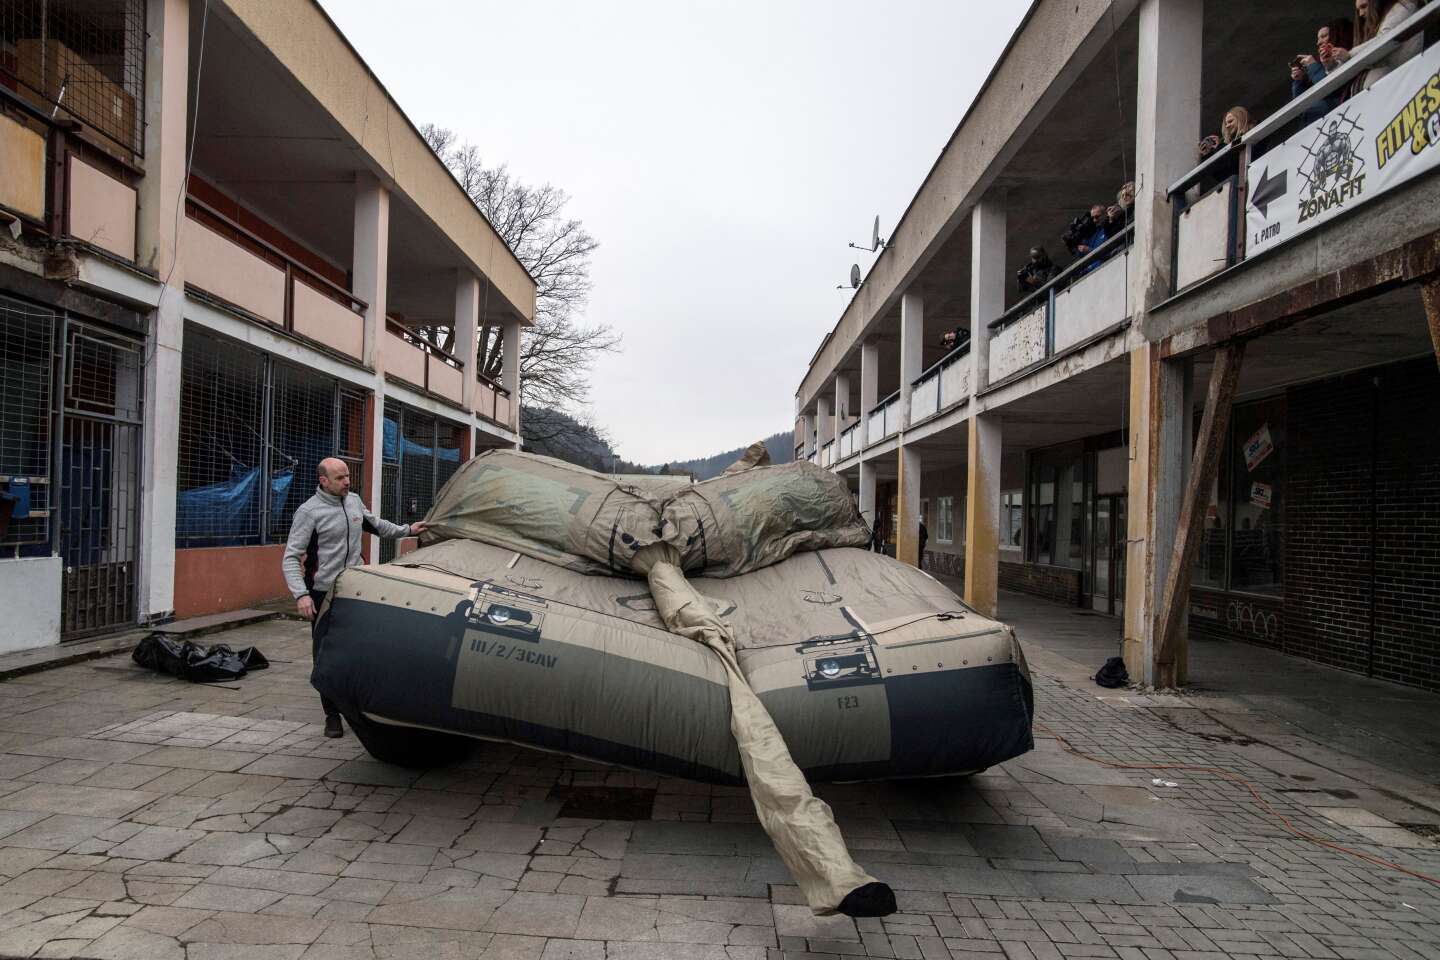 En République tchèque, une usine fabrique des engins militaires gonflables pour tromper l’armée russe